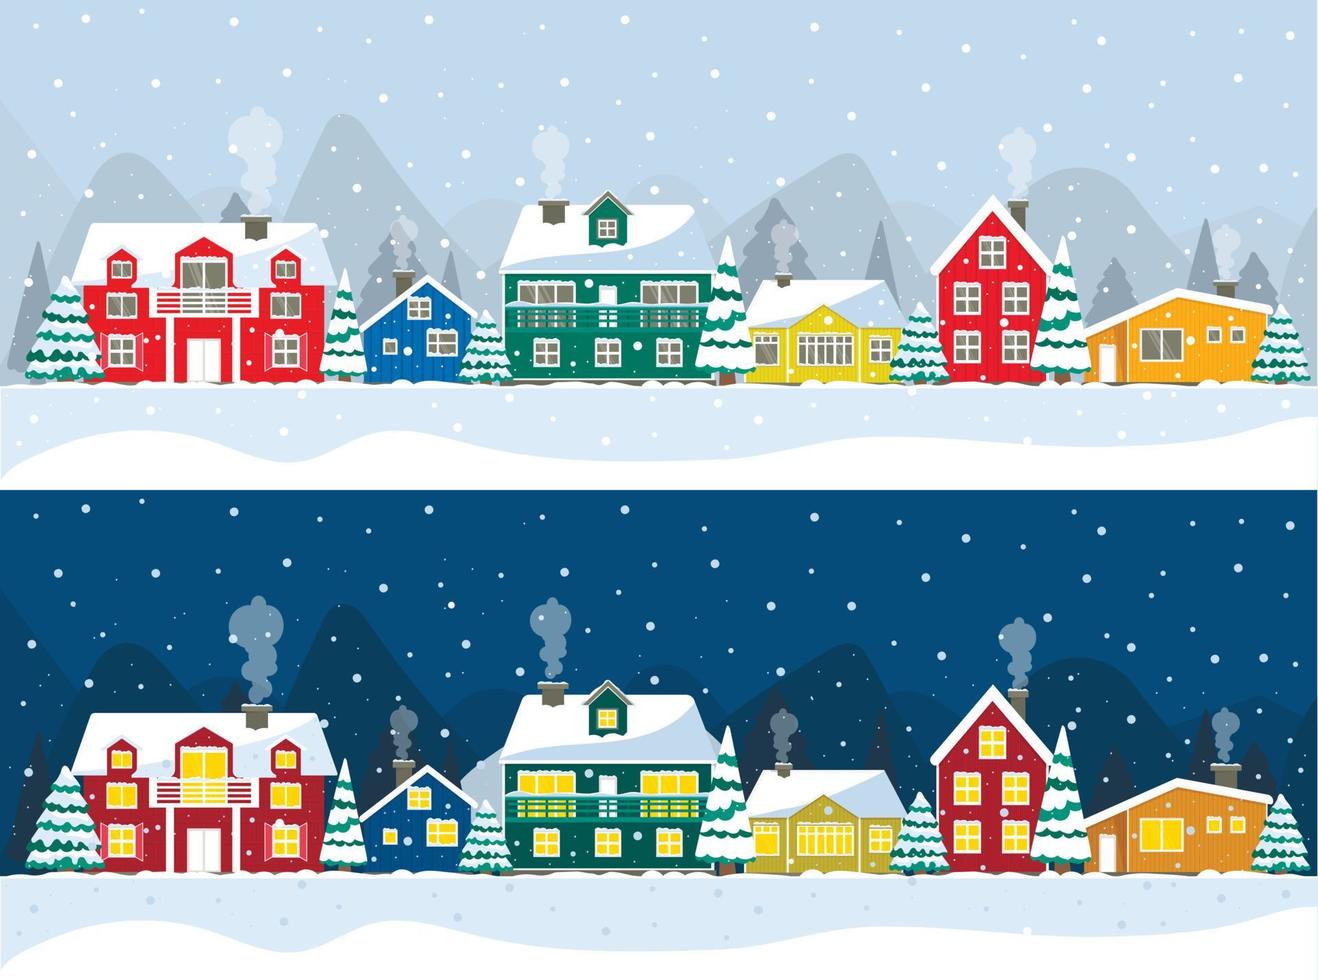 notte nevosa in un accogliente panorama natalizio del villaggio. paesaggio notturno e diurno del villaggio di natale invernale. case colorate islanda, polo nord, olanda vettore